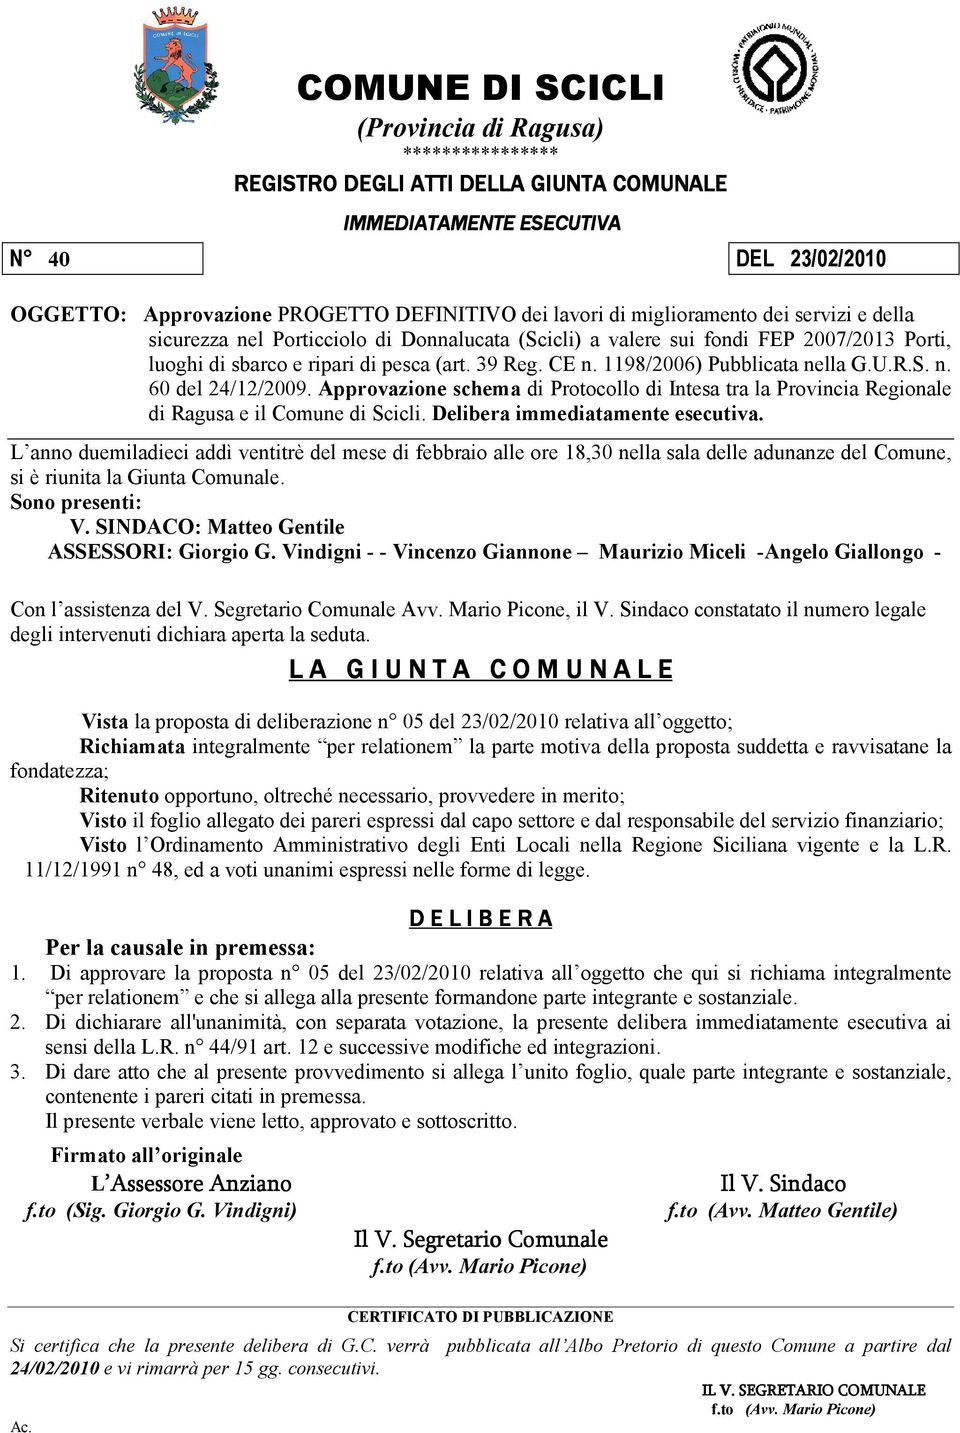 1198/2006) Pubblicata nella G.U.R.S. n. 60 del 24/12/2009. Approvazione schema di Protocollo di Intesa tra la Provincia Regionale di Ragusa e il Comune di Scicli. Delibera immediatamente esecutiva.